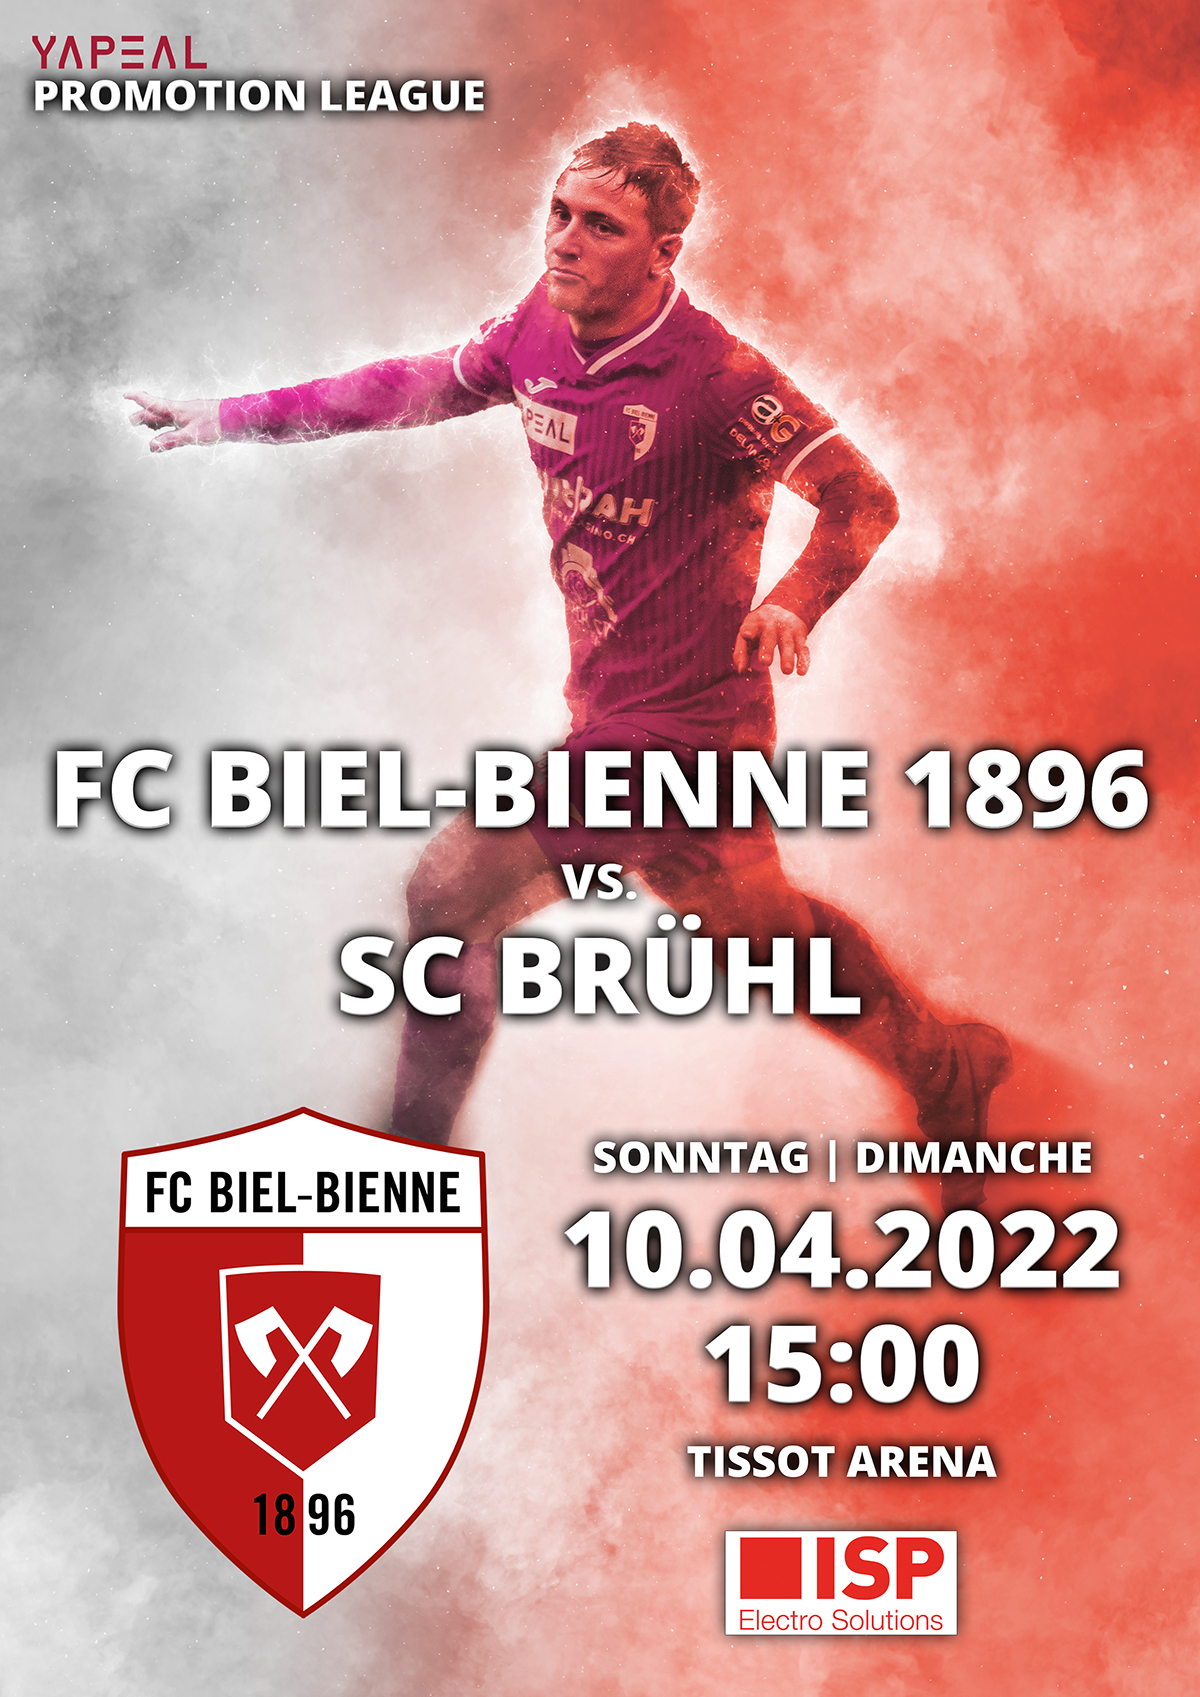 FC Biel-Bienne 1896 vs. SC Brühl